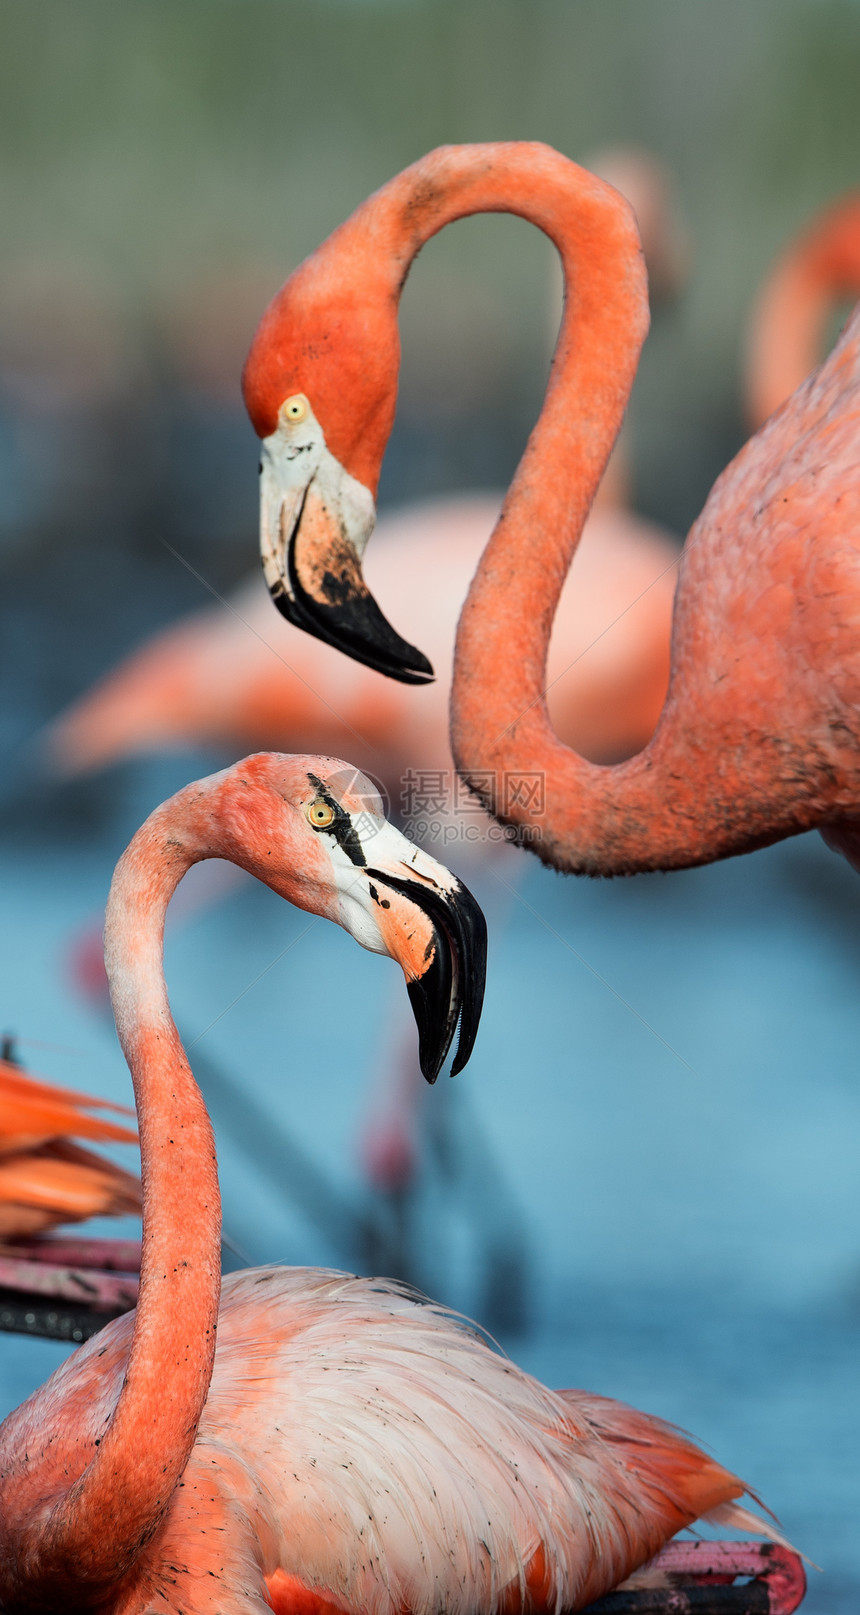 Flammingo卢布橡胶荒野姿势居住热带观鸟异国动物群羽毛鸟舍图片